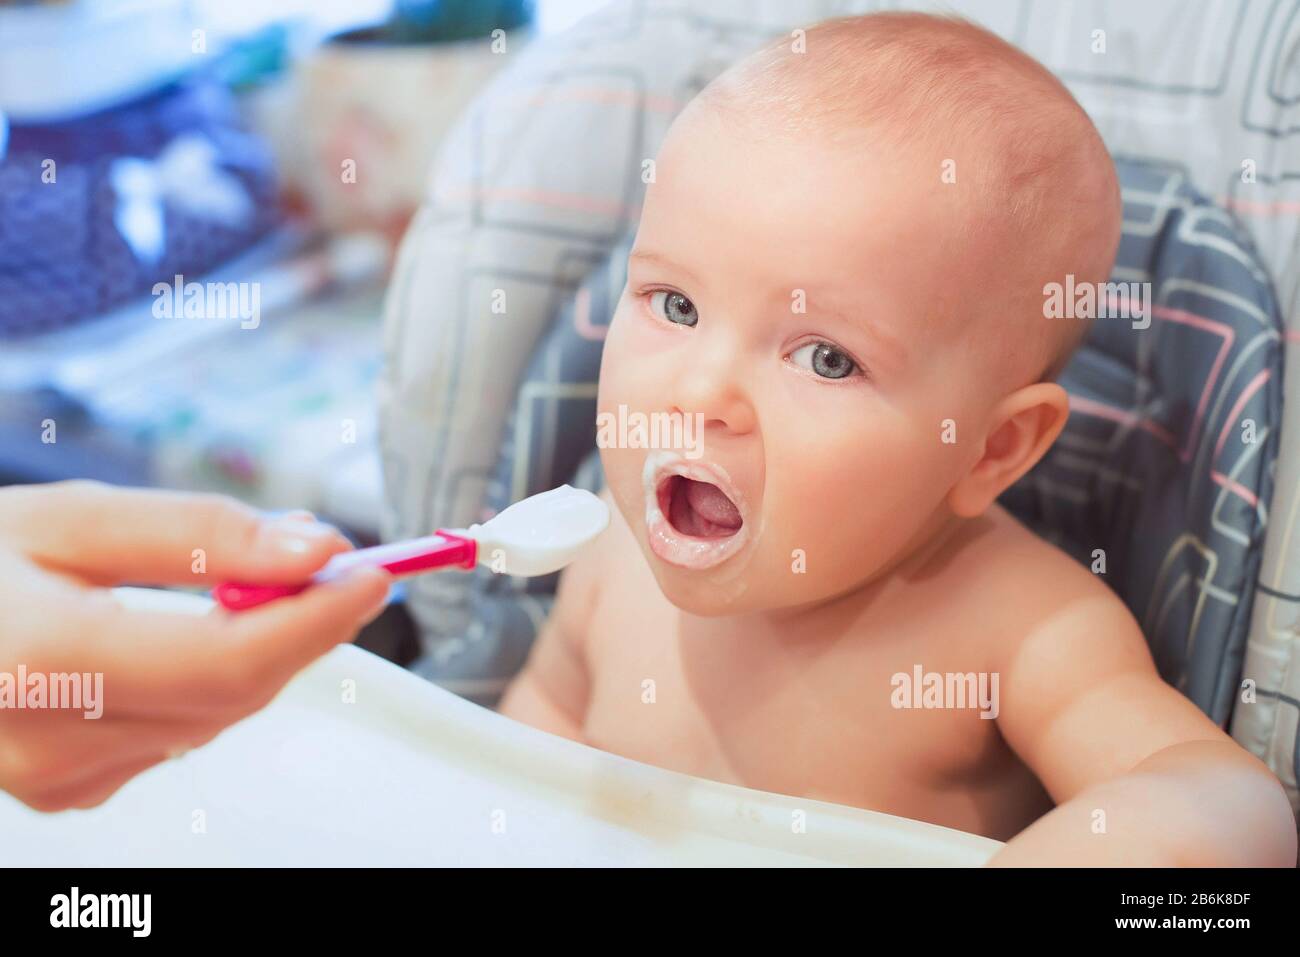 El bebé está comiendo su comida. Comida del bebé, fórmula, cuidado del bebé Foto de stock